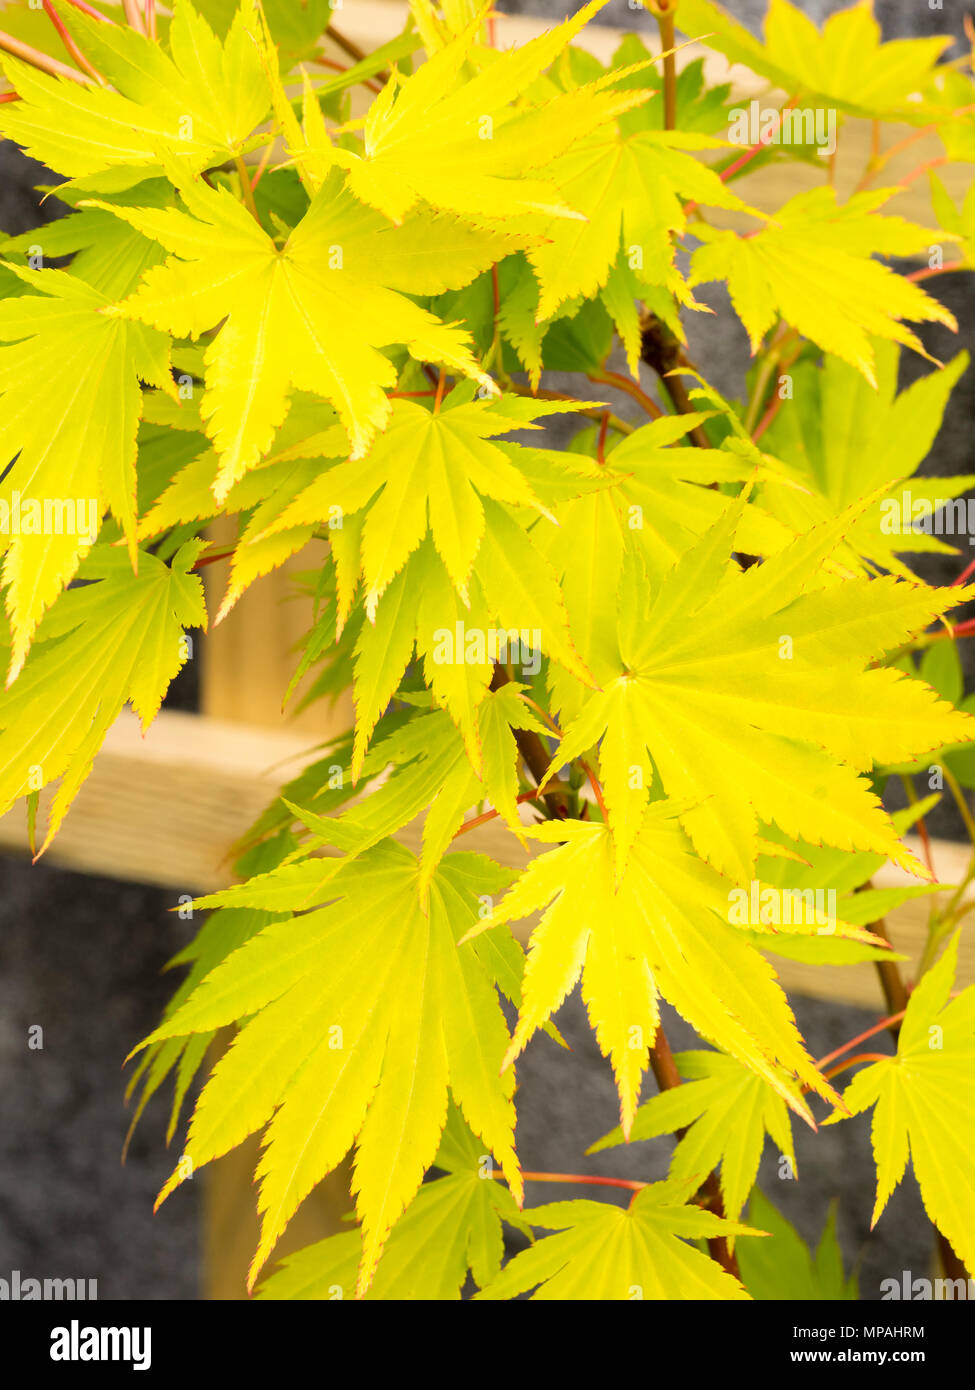 Feuillage d'été jaune de l'Ornamental Japanese maple, Acer shirasawanum 'Jordan' Banque D'Images